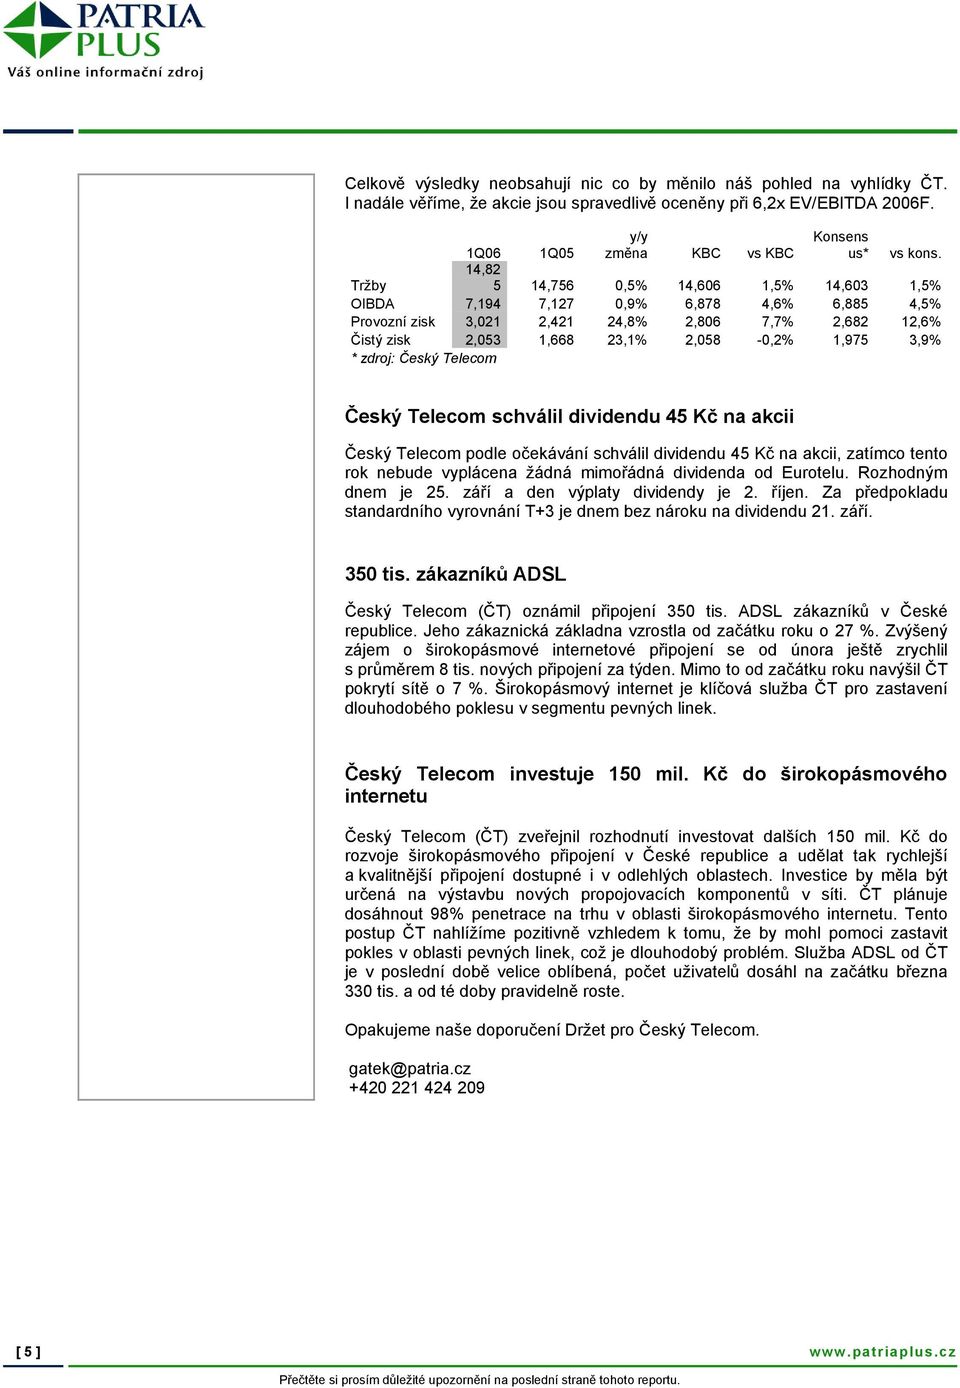 3,9% * zdroj: Český Telecom Český Telecom schválil dividendu 45 Kč na akcii Český Telecom podle očekávání schválil dividendu 45 Kč na akcii, zatímco tento rok nebude vyplácena žádná mimořádná